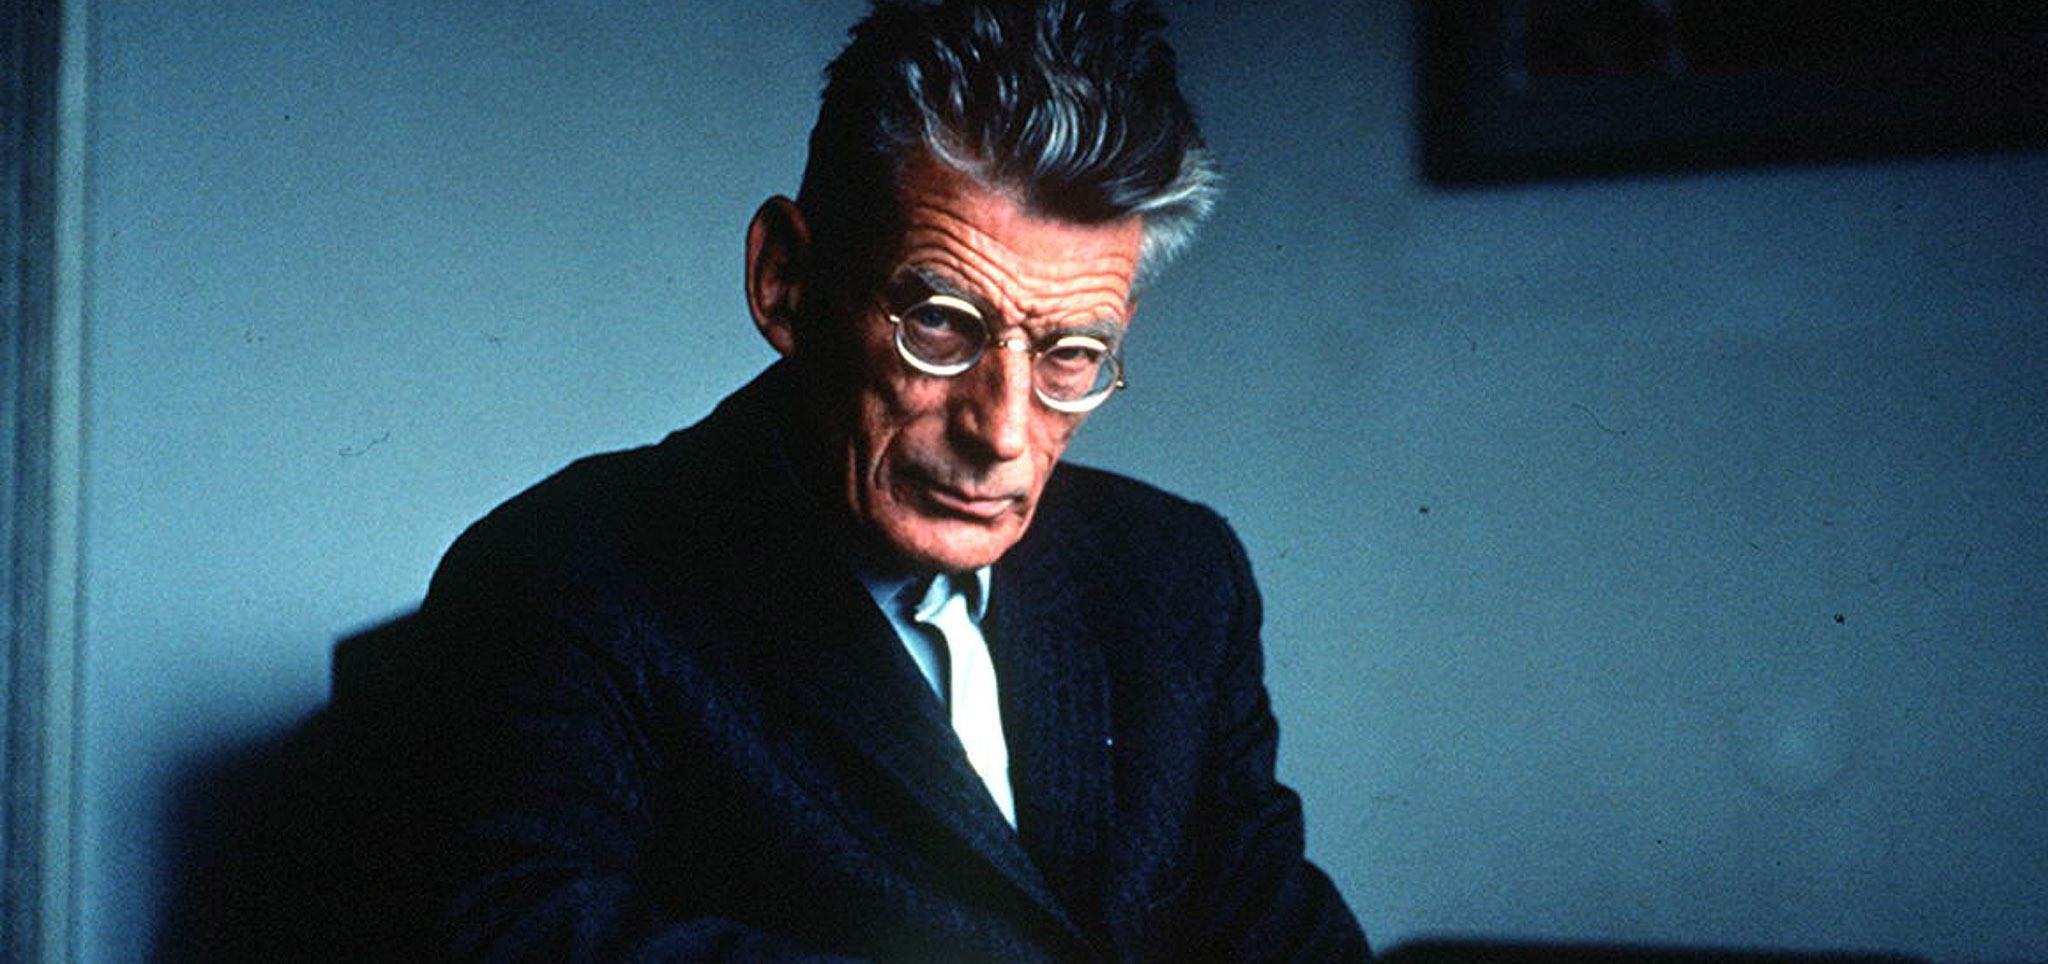 Samuel Beckett, c. 1950. Source: Rex Features/SIPA/OZKOK.